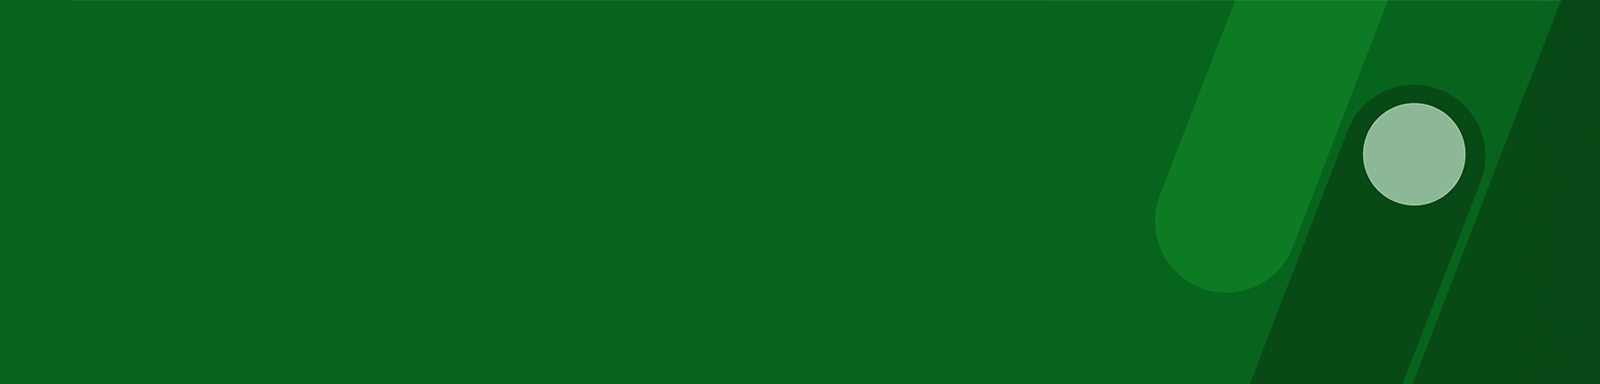 Zaļš taisnstūrveida objekts ar tekstu “Kibernoziegumi”